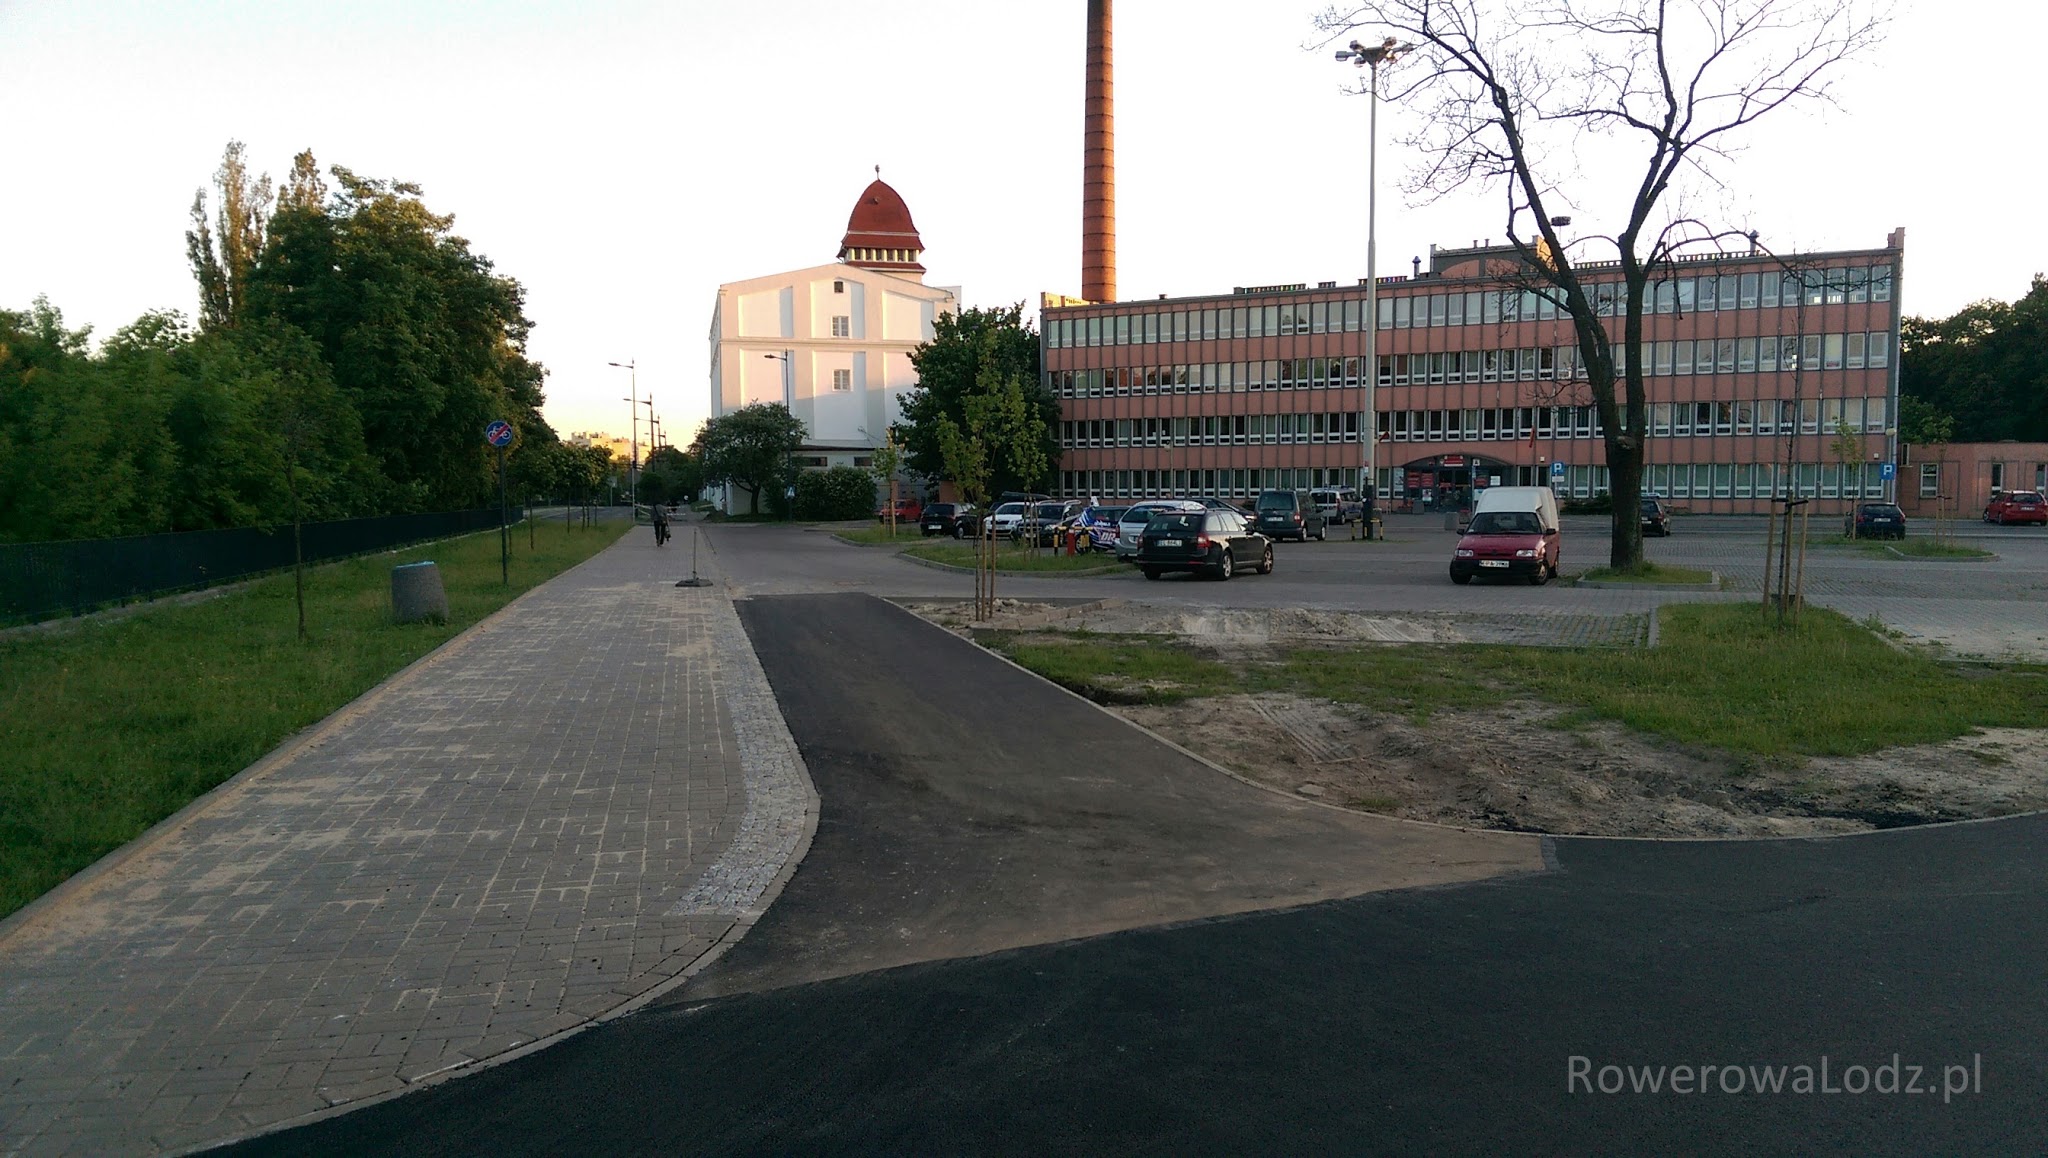 Wjazd na parking przez który można dostać się na ul. Karolewską 